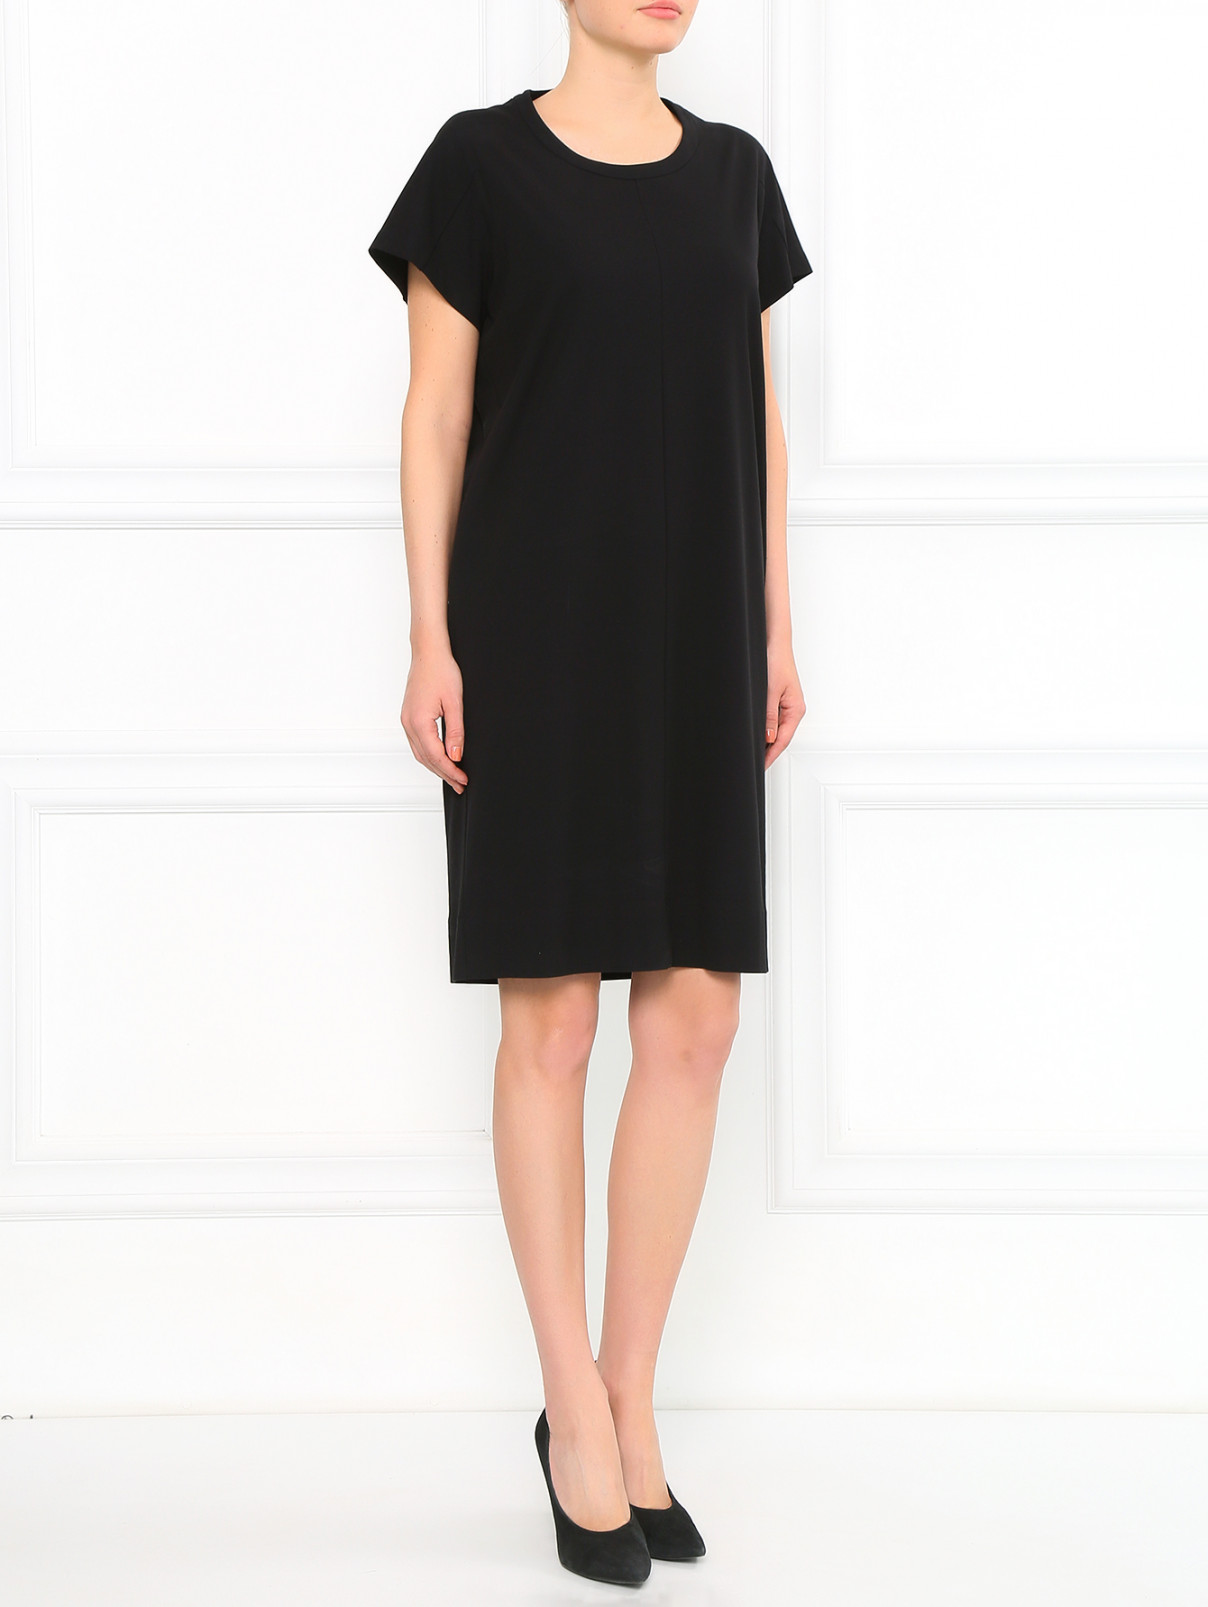 Платье из хлопка с боковыми карманами Jil Sander  –  Модель Общий вид  – Цвет:  Черный